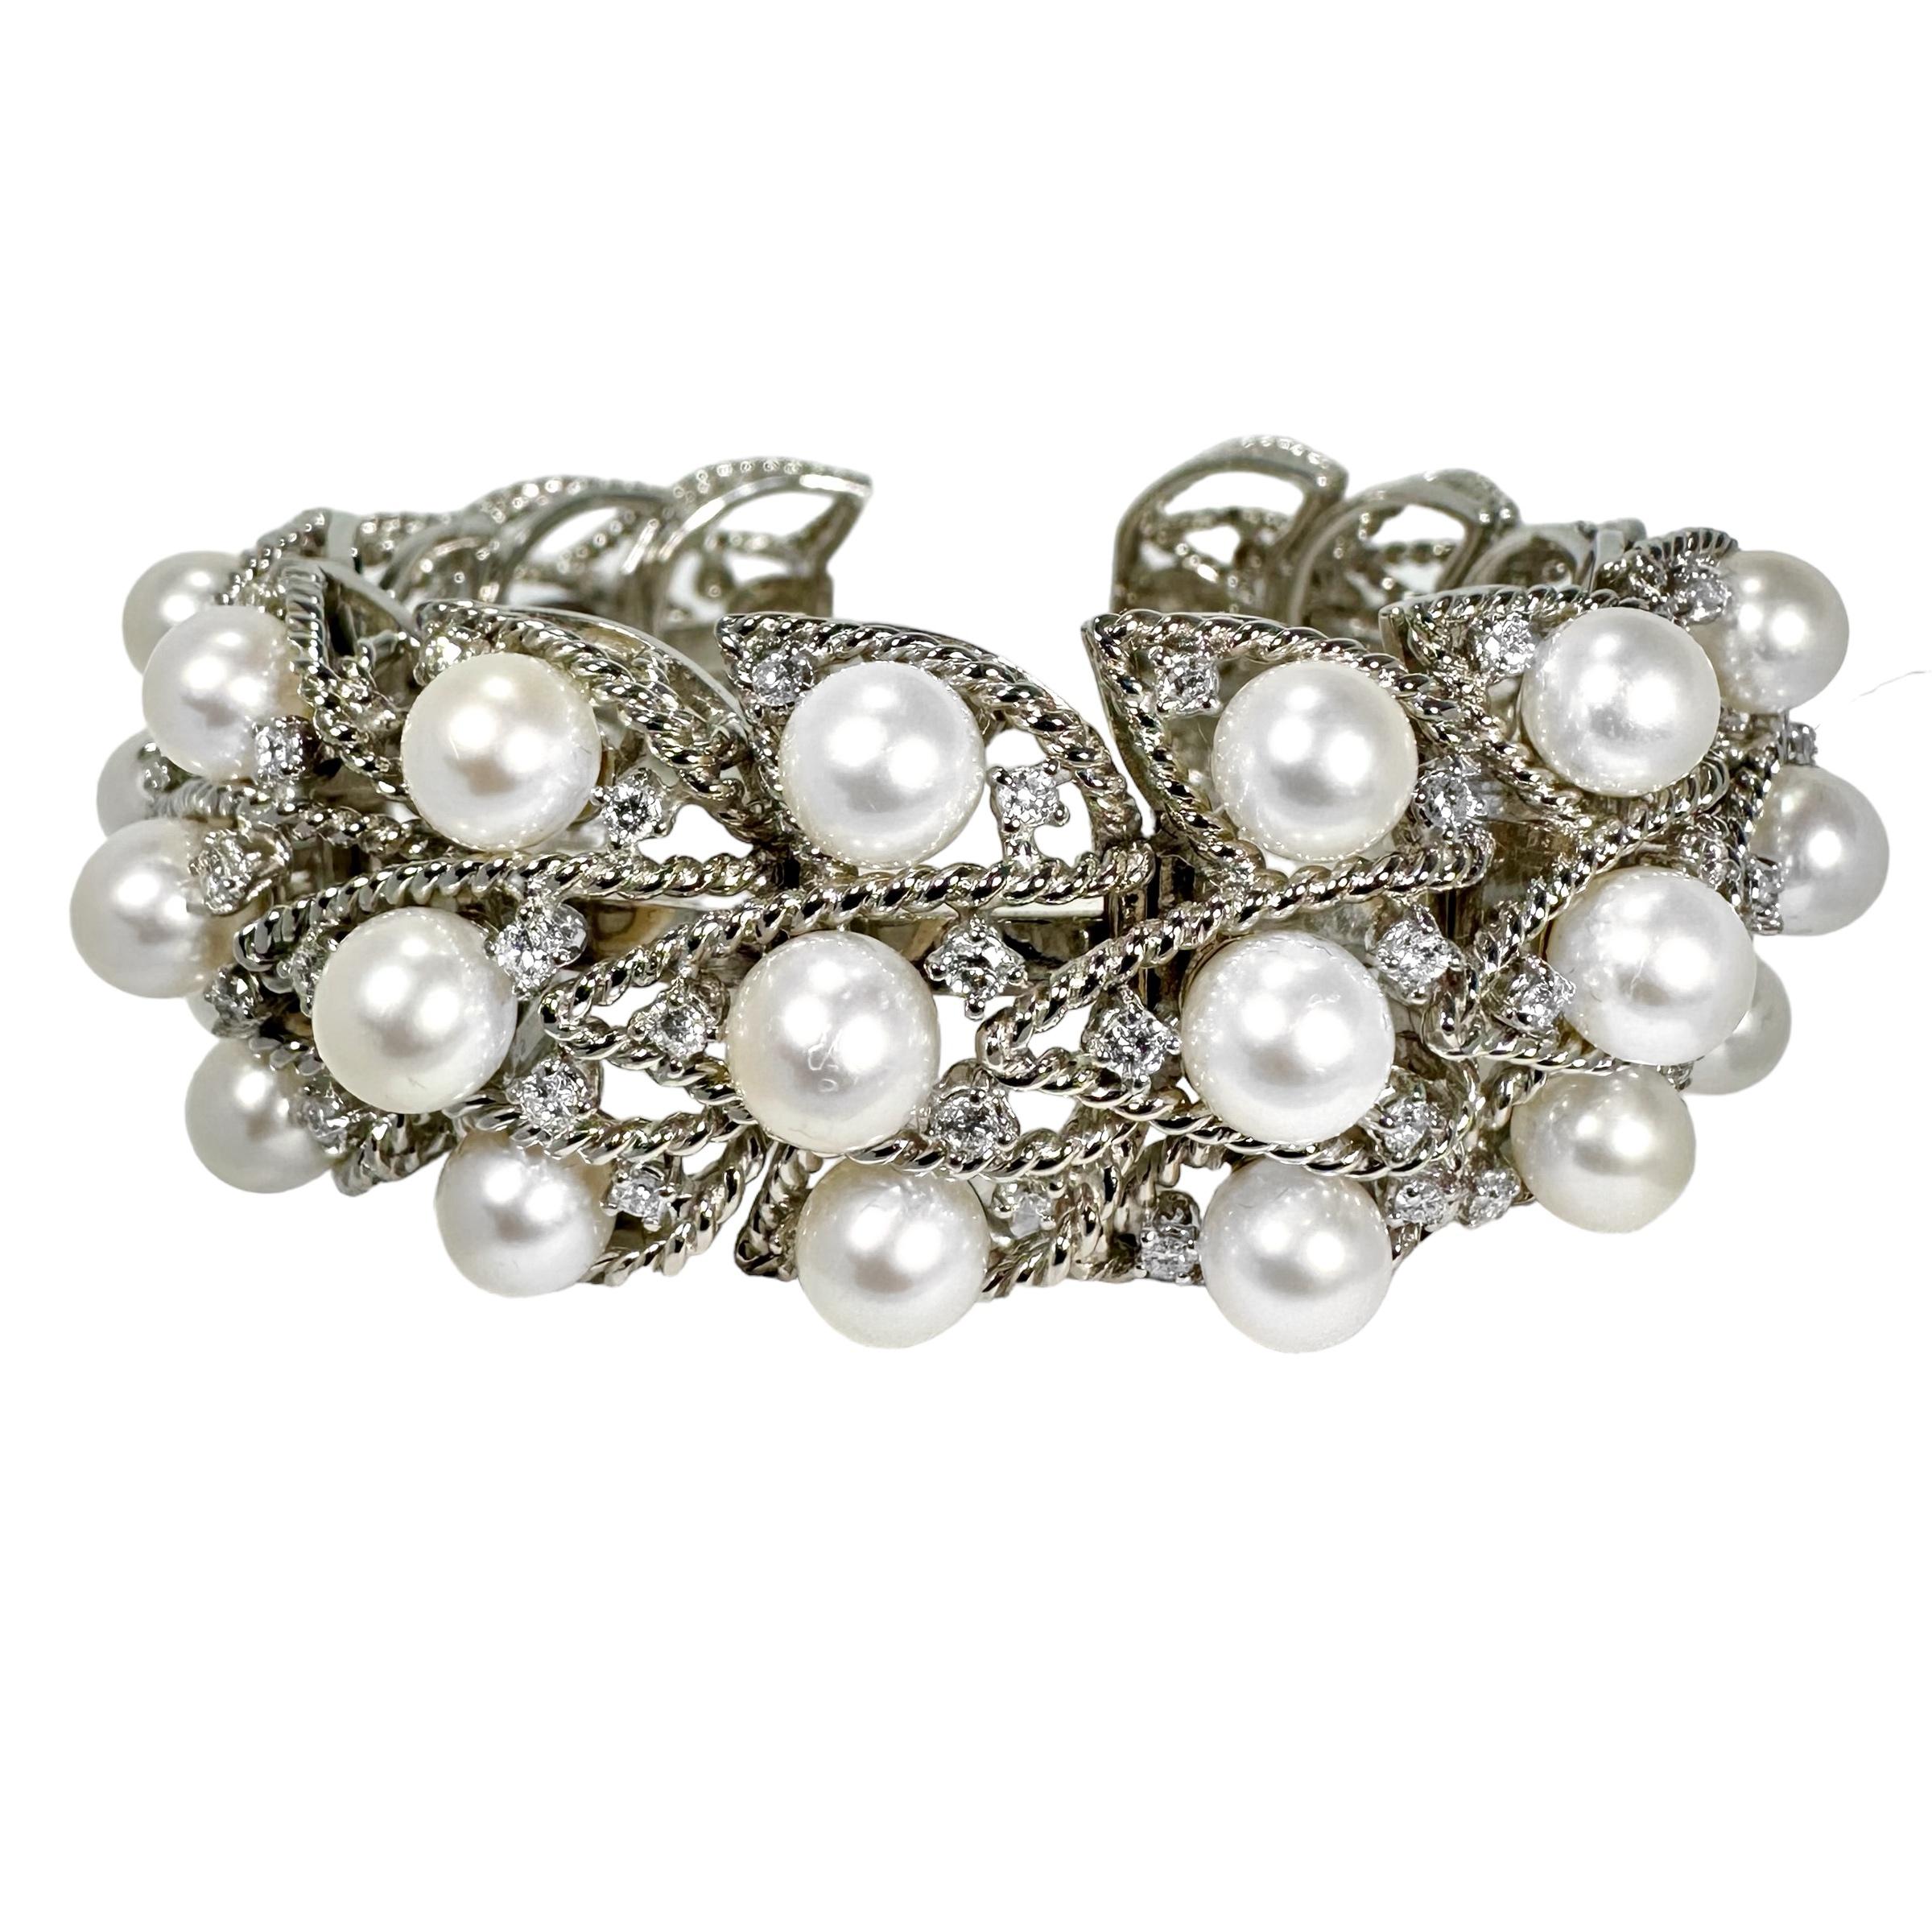 Cette ravissante manchette flexible, en perles et en diamants, signée Eleg Schepps, est aussi élégante qu'agréable à porter. La nature des liens flexibles et la conception ouverte du dos permettent de s'adapter à une gamme de poignets allant d'une